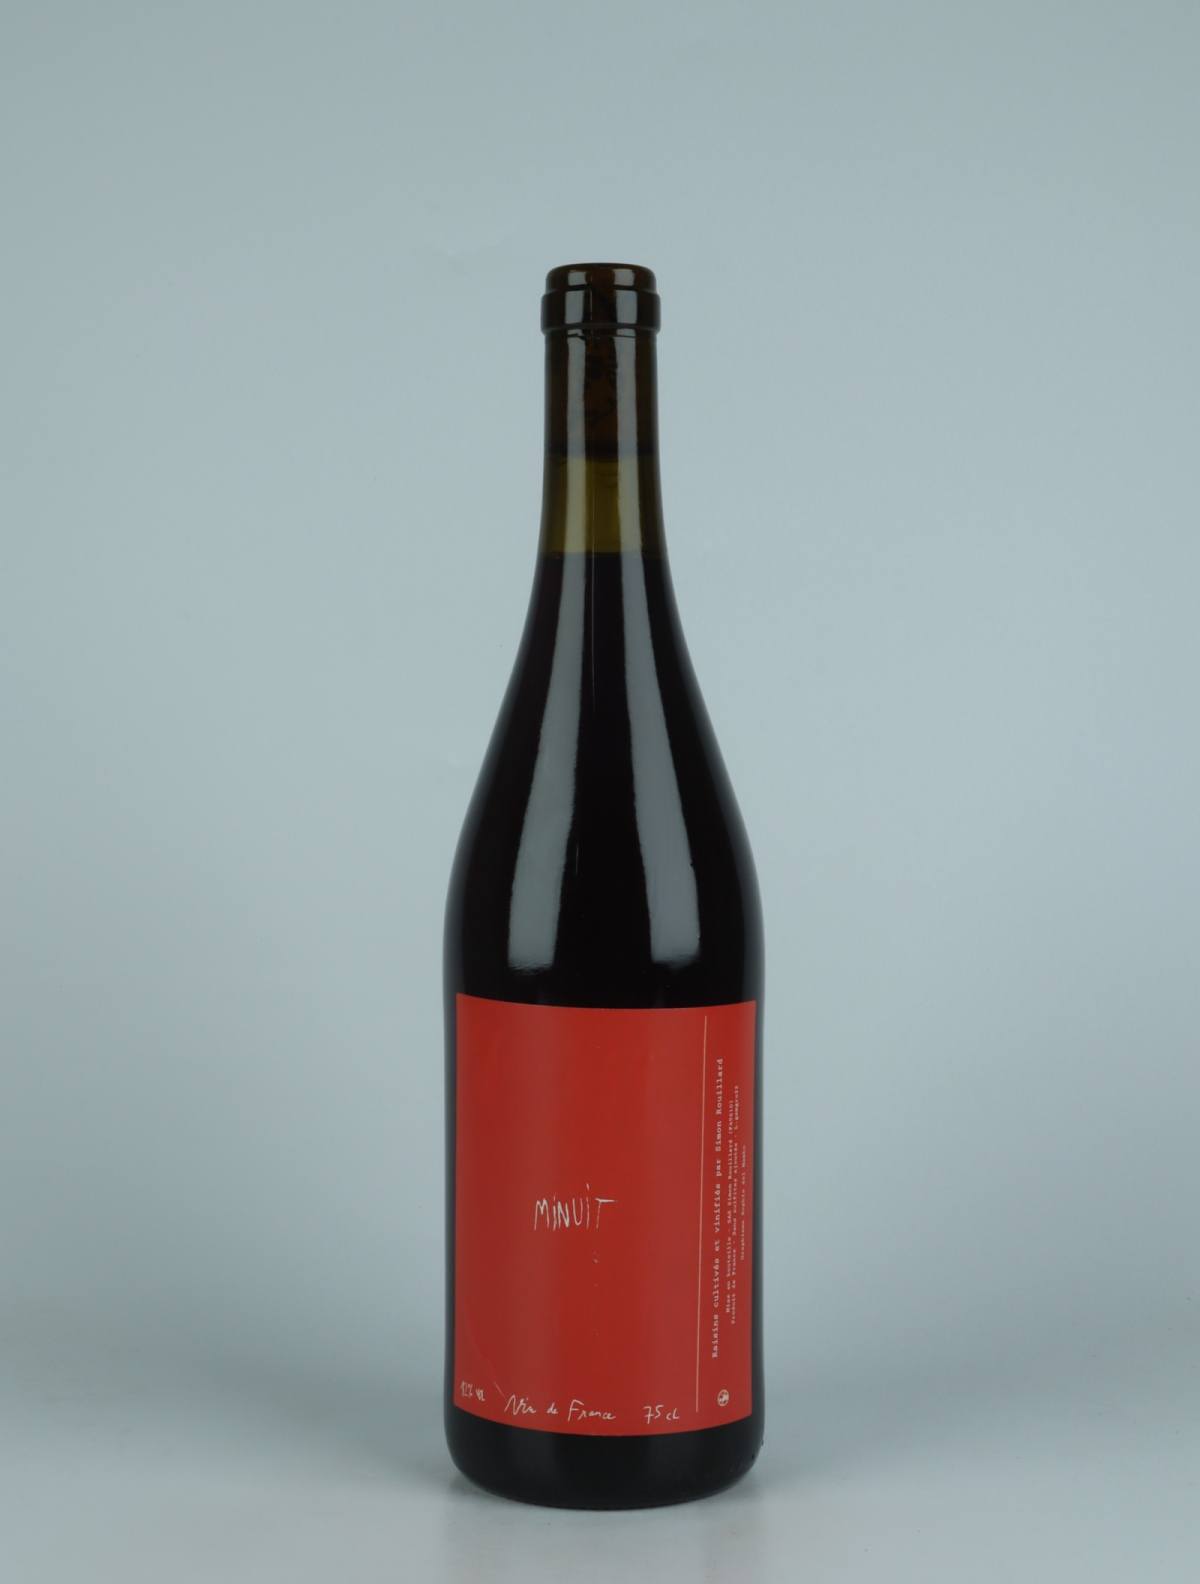 A bottle 2022 Minuit Red wine from Simon Rouillard, Loire in France